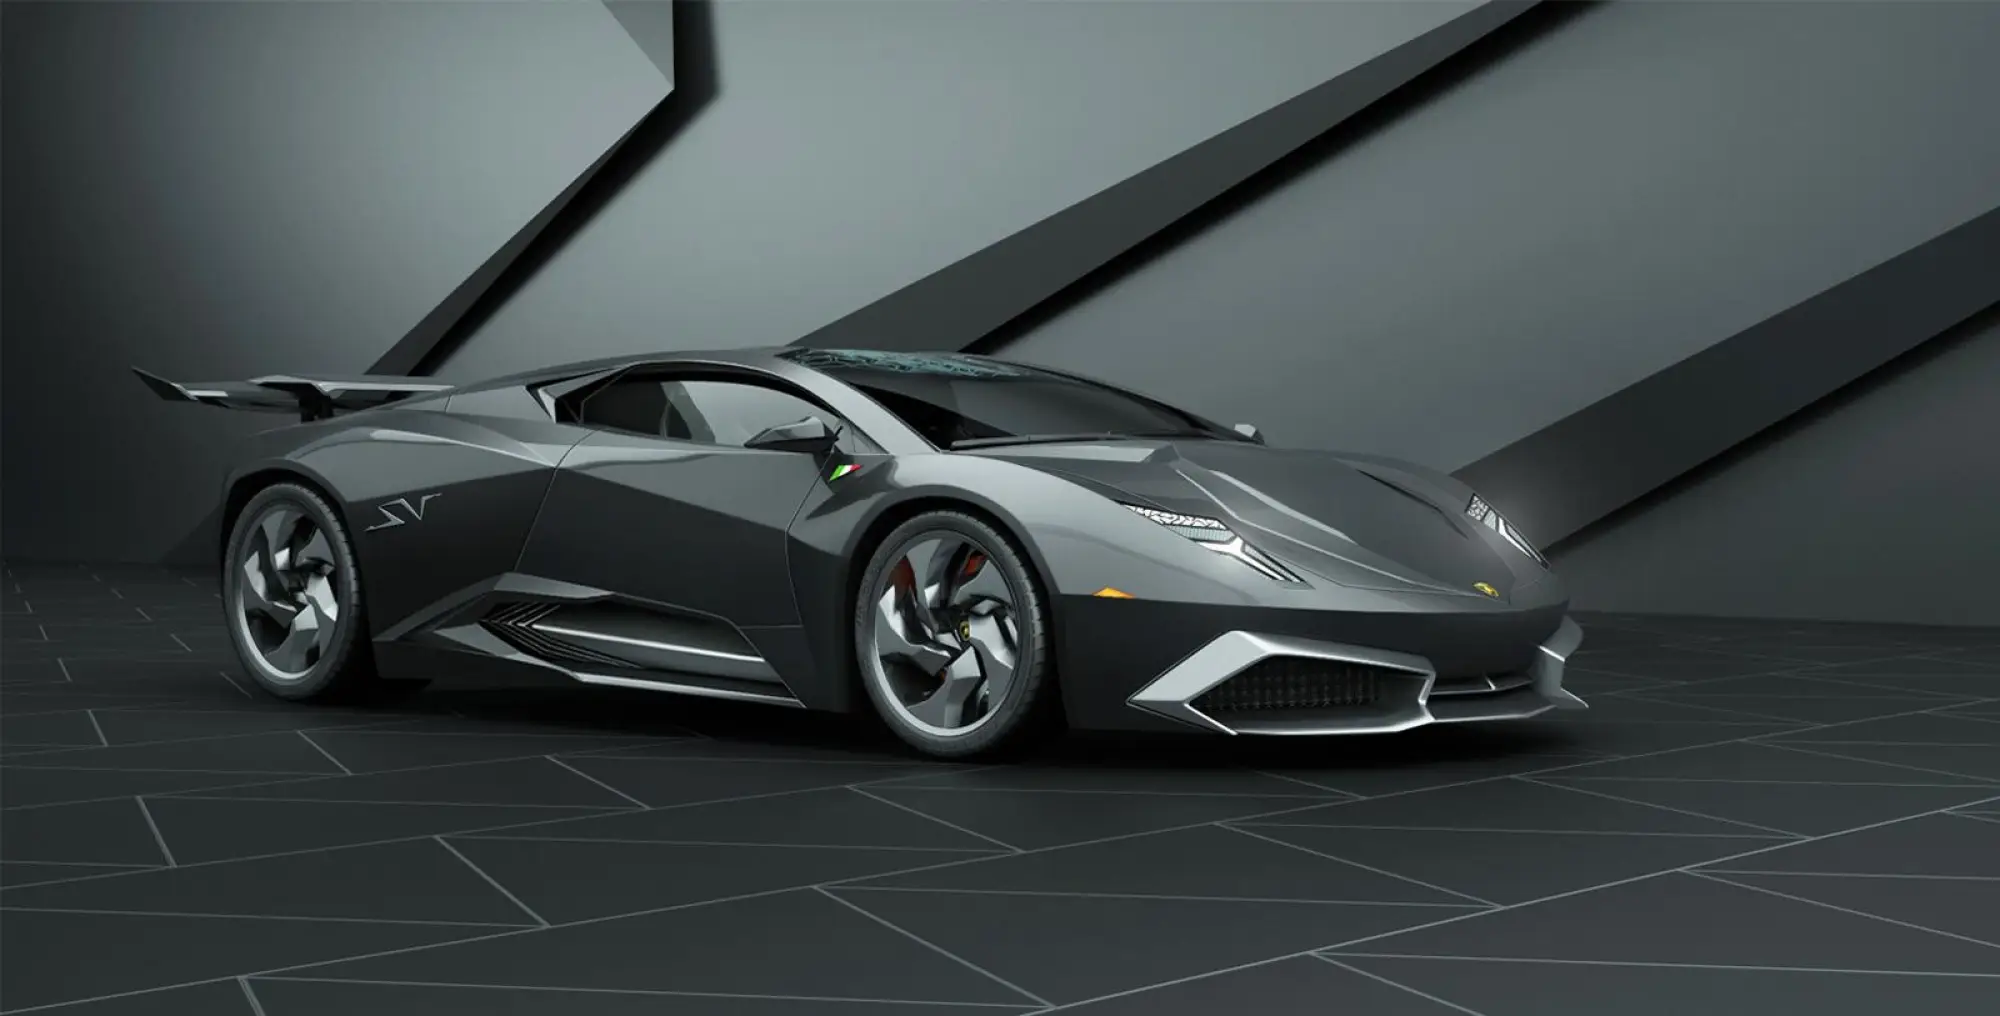 Lamborghini Phenomeno concept render by Grigory Gorin - 31